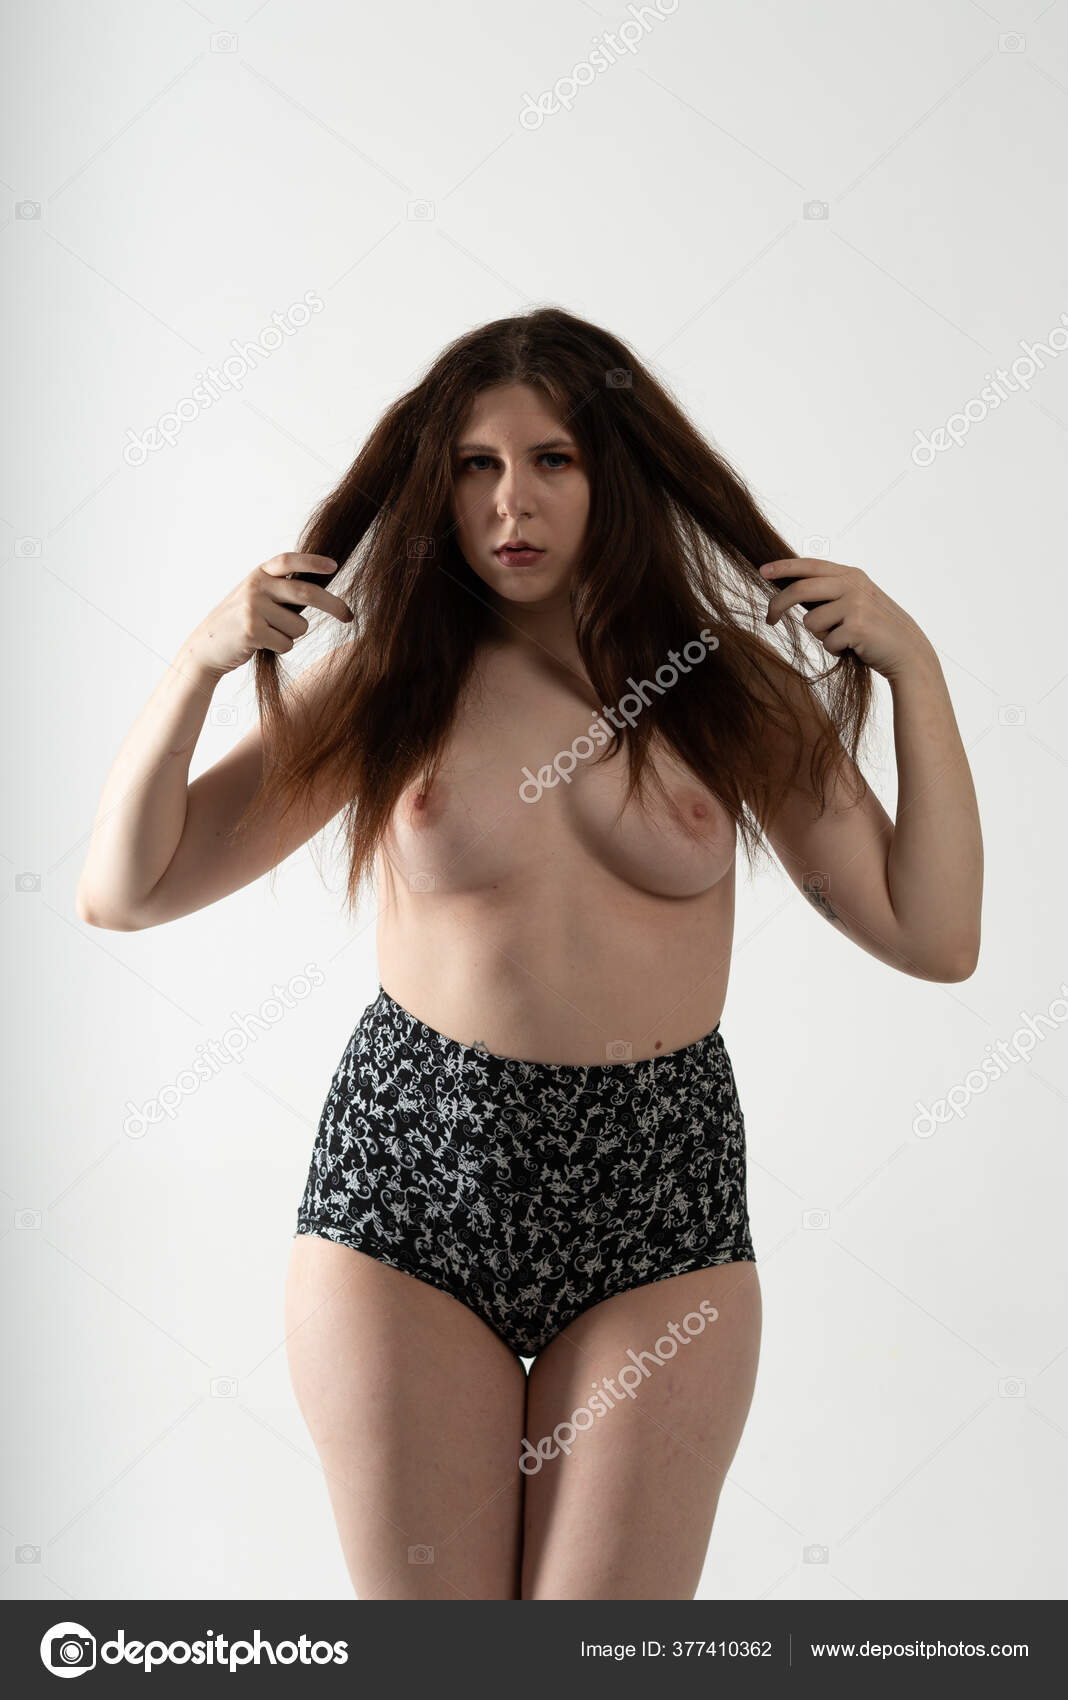 https://st3n.depositphotos.com/10086424/37741/i/1600/depositphotos_377410362-stock-photo-young-beautiful-girl-posing-nude.jpg